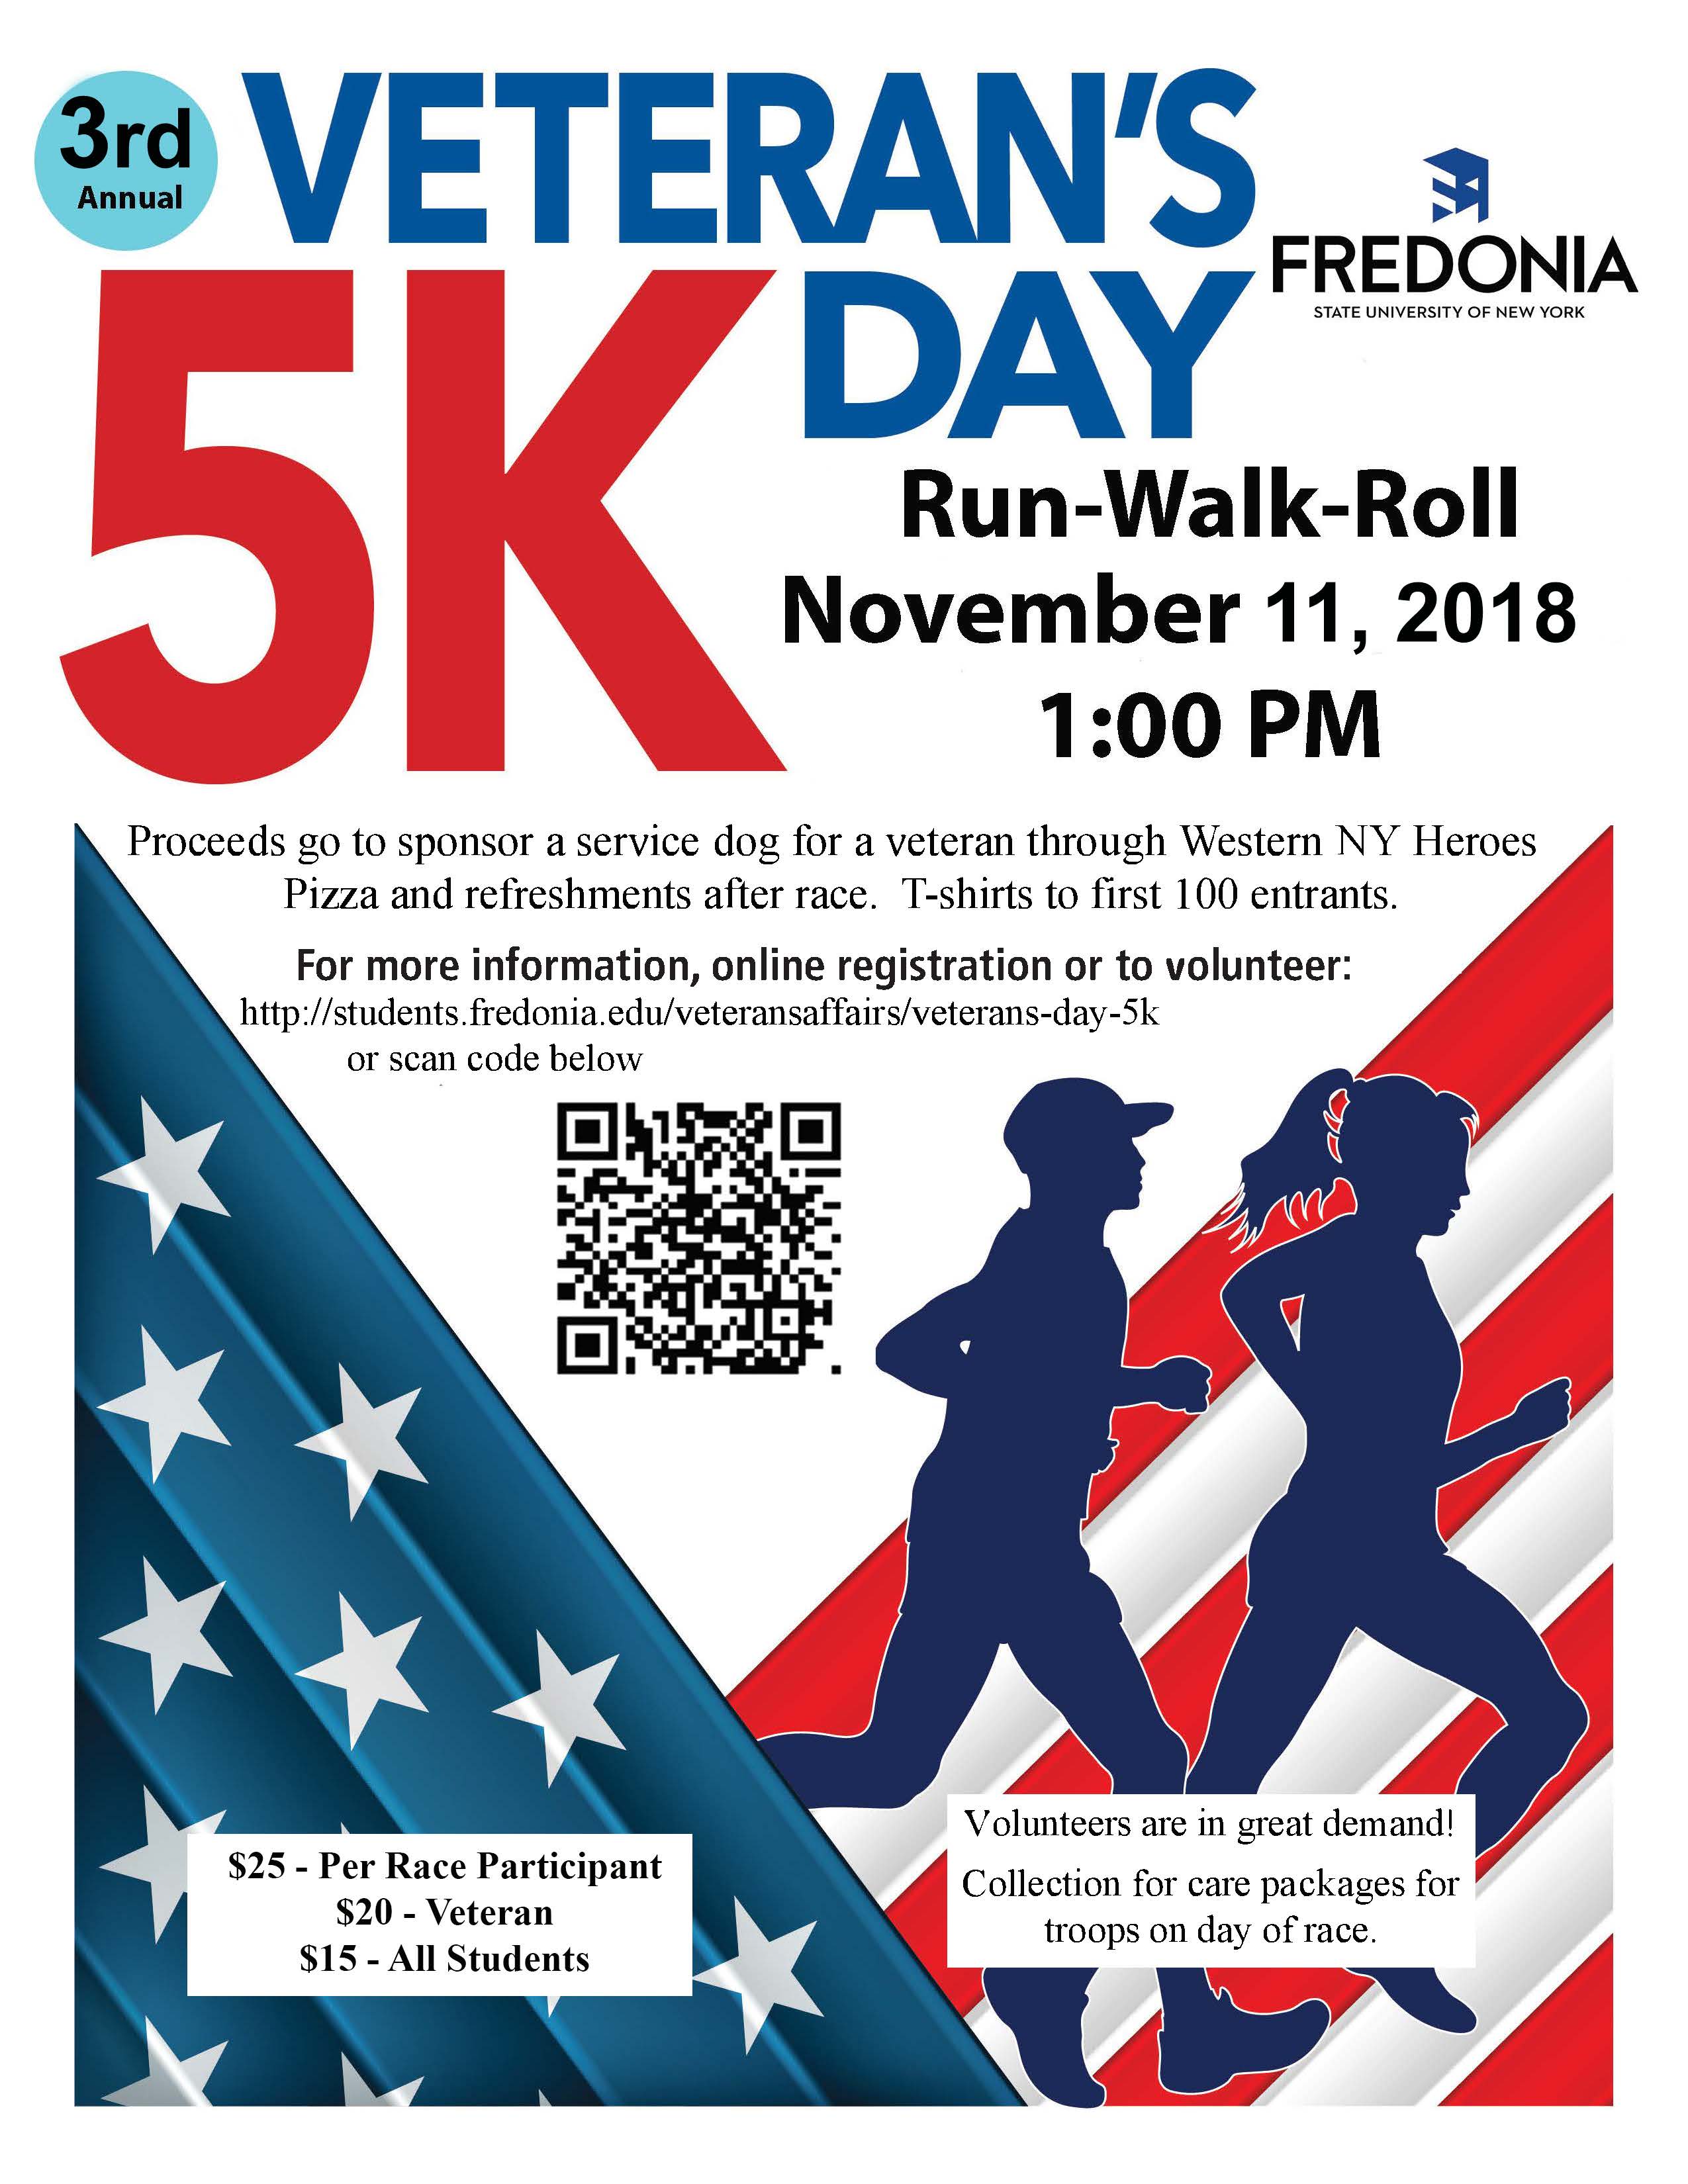 Veterans Day 5K Fredonia.edu